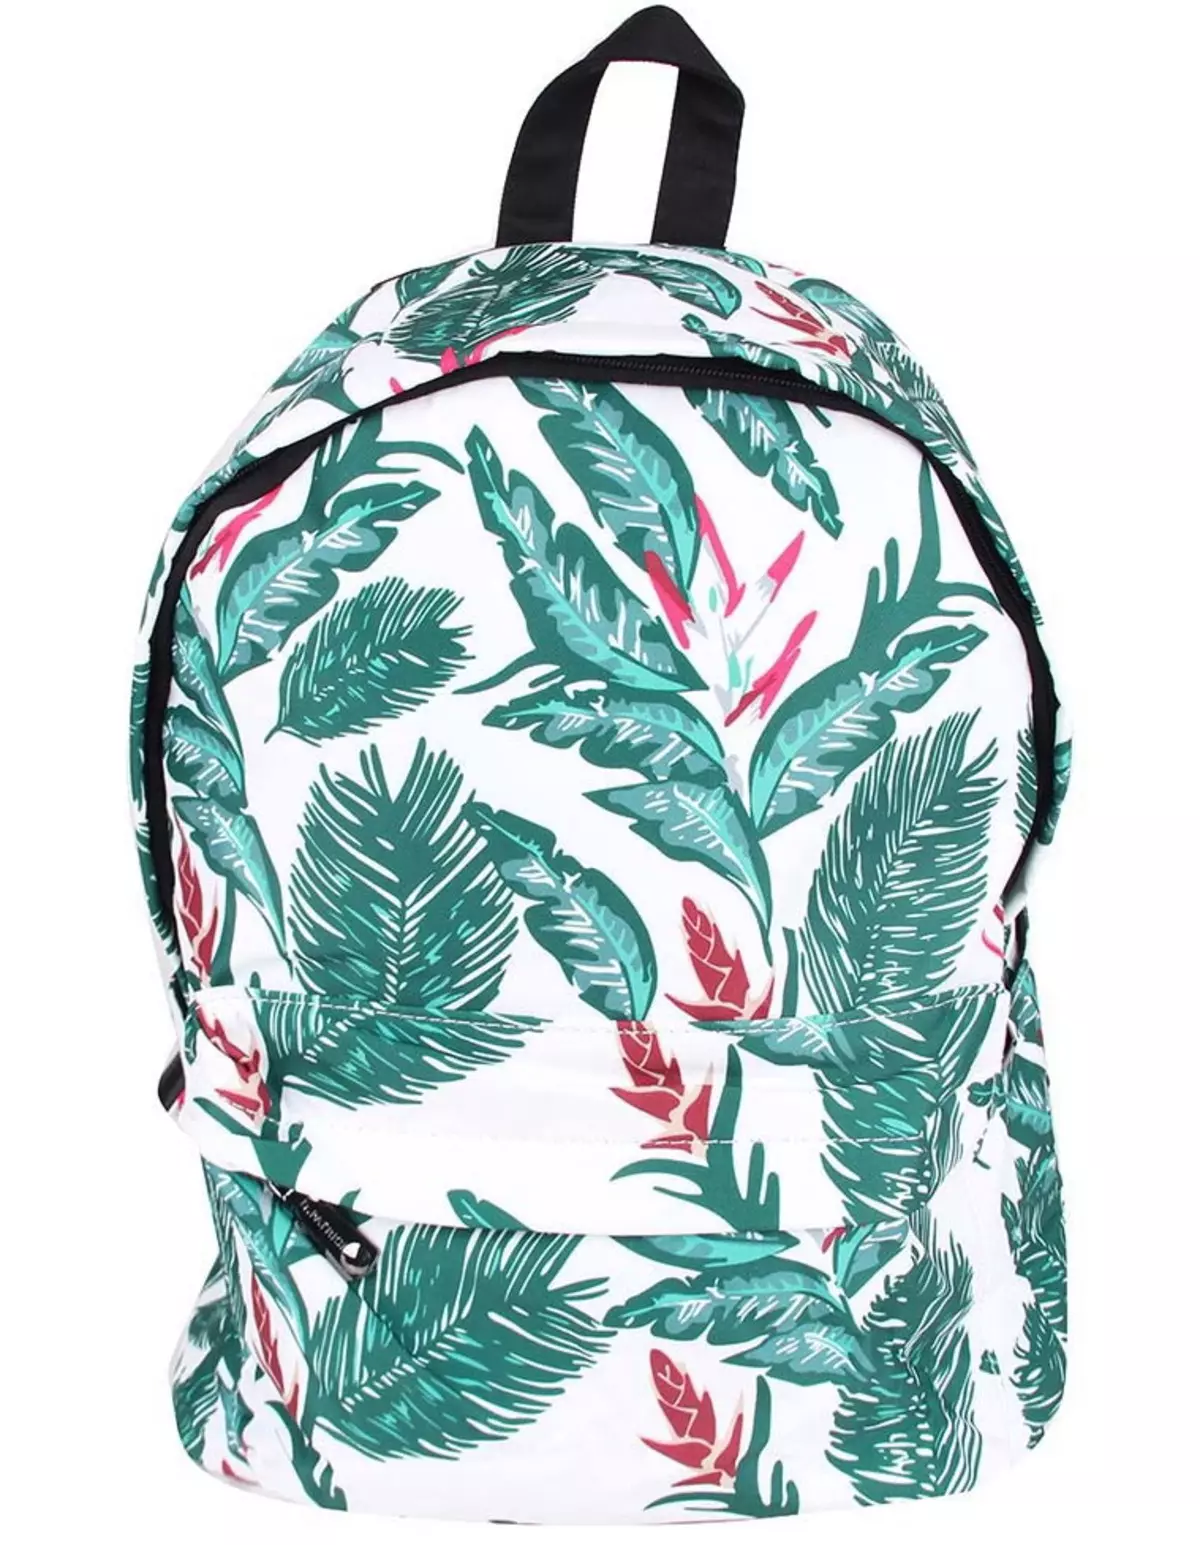 Рюкзаки Kari: огляд жіночих моделей, шкільні рюкзаки для дівчаток і хлопчиків, білі і чорні рюкзаки інших брендів, представлених в магазині 15431_42